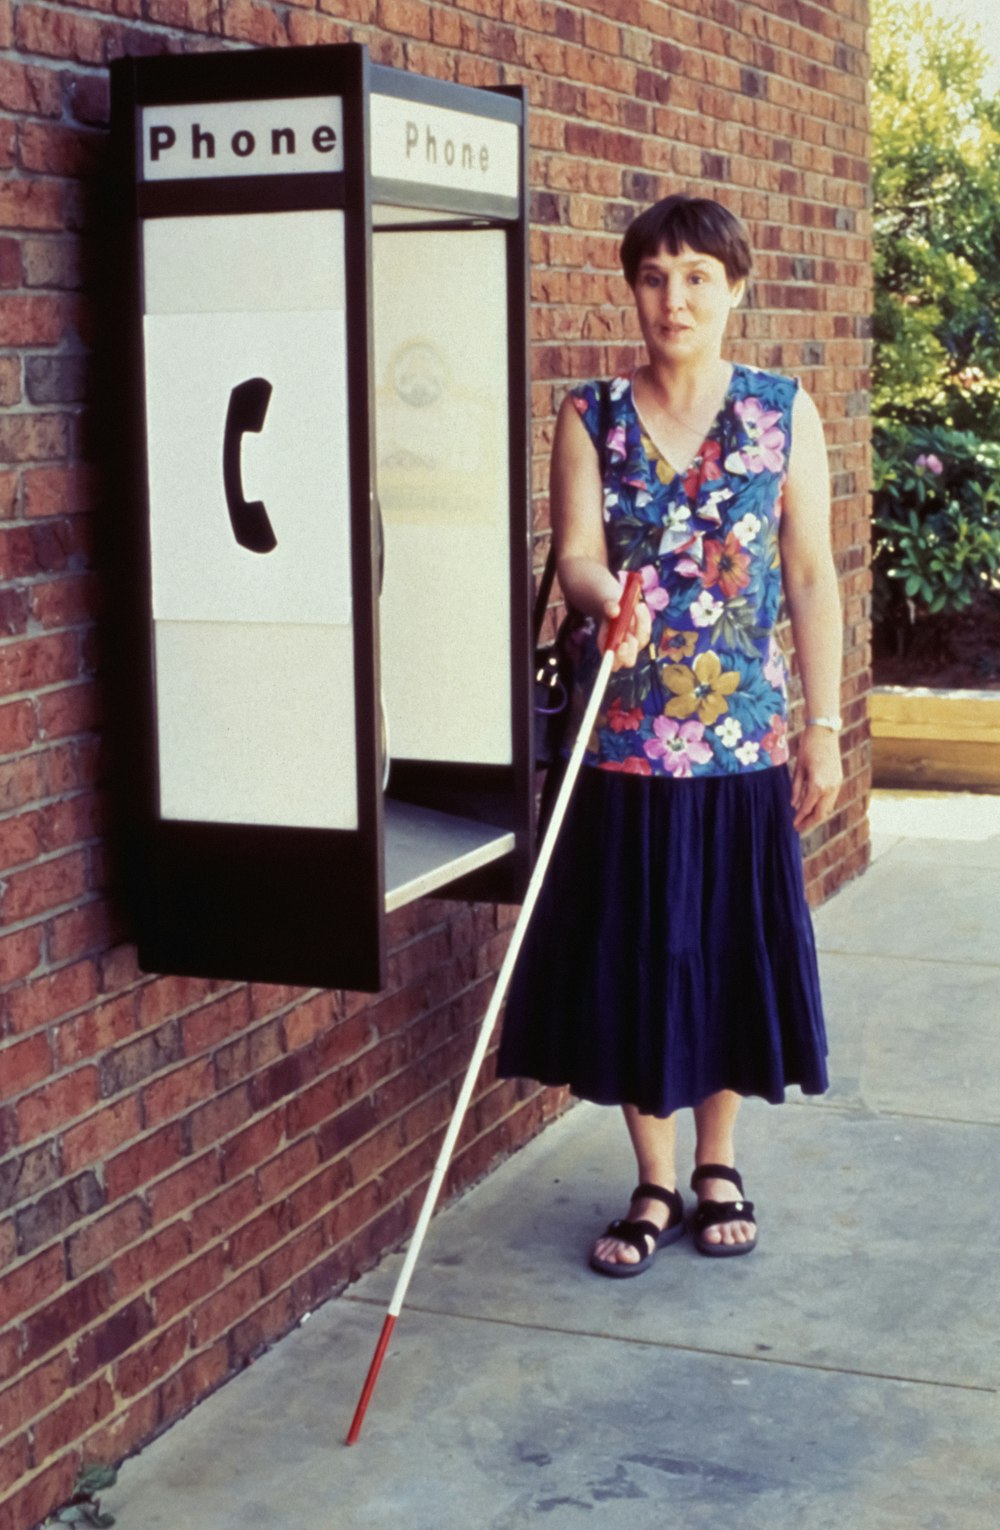 Una mujer parada junto a una cabina telefónica